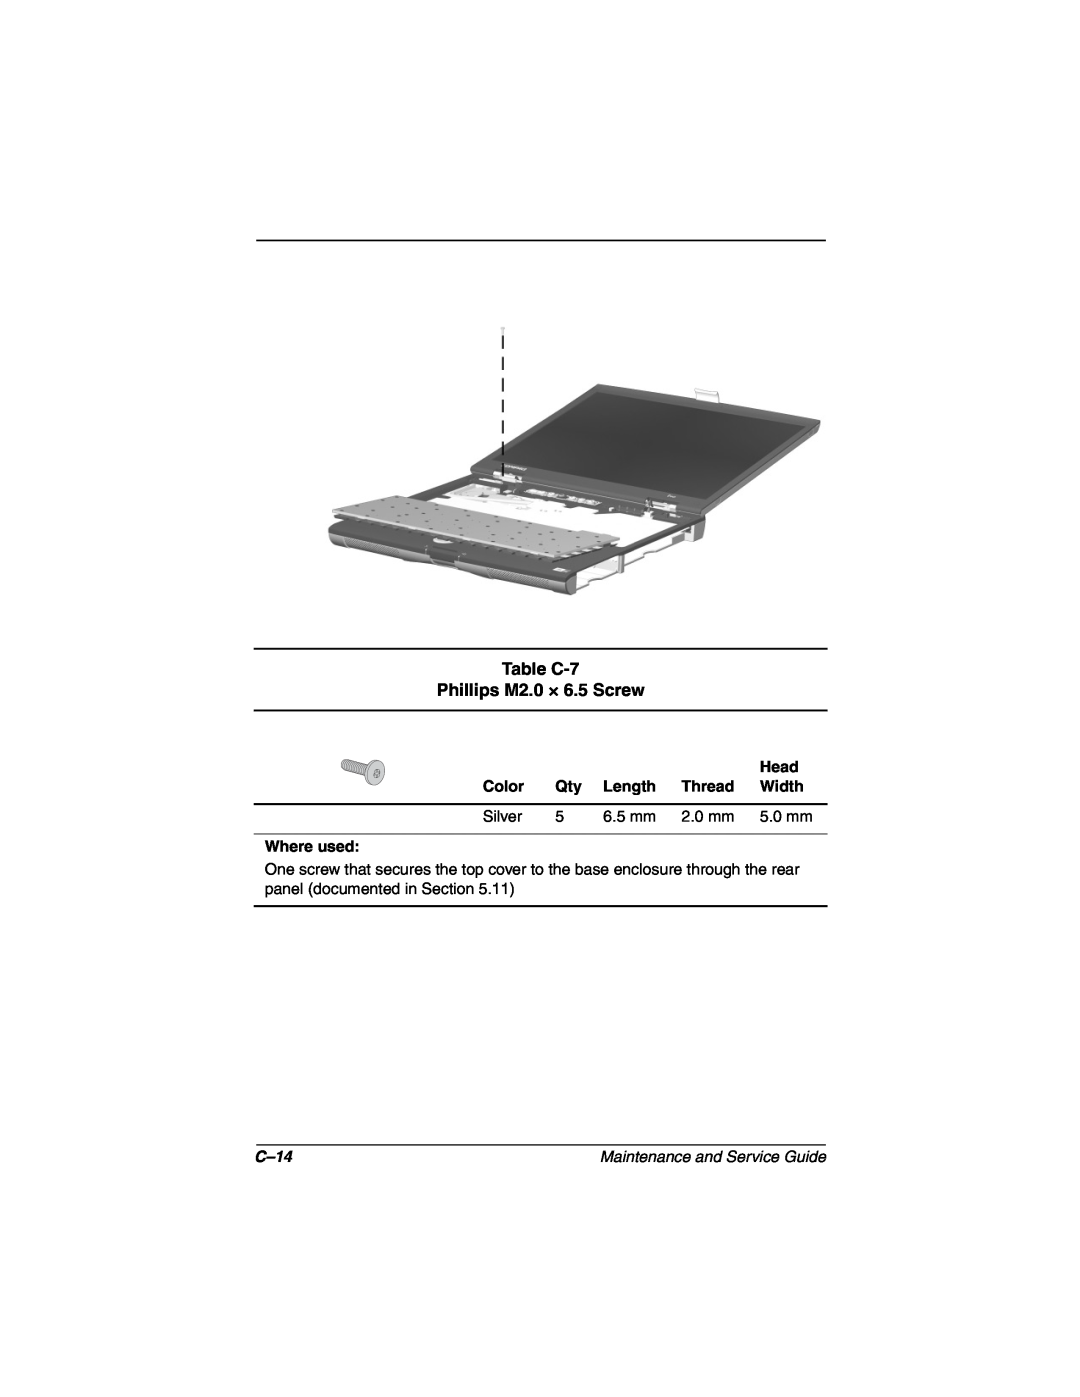 Compaq N160 manual Table C-7 Phillips M2.0 × 6.5 Screw, C-14 